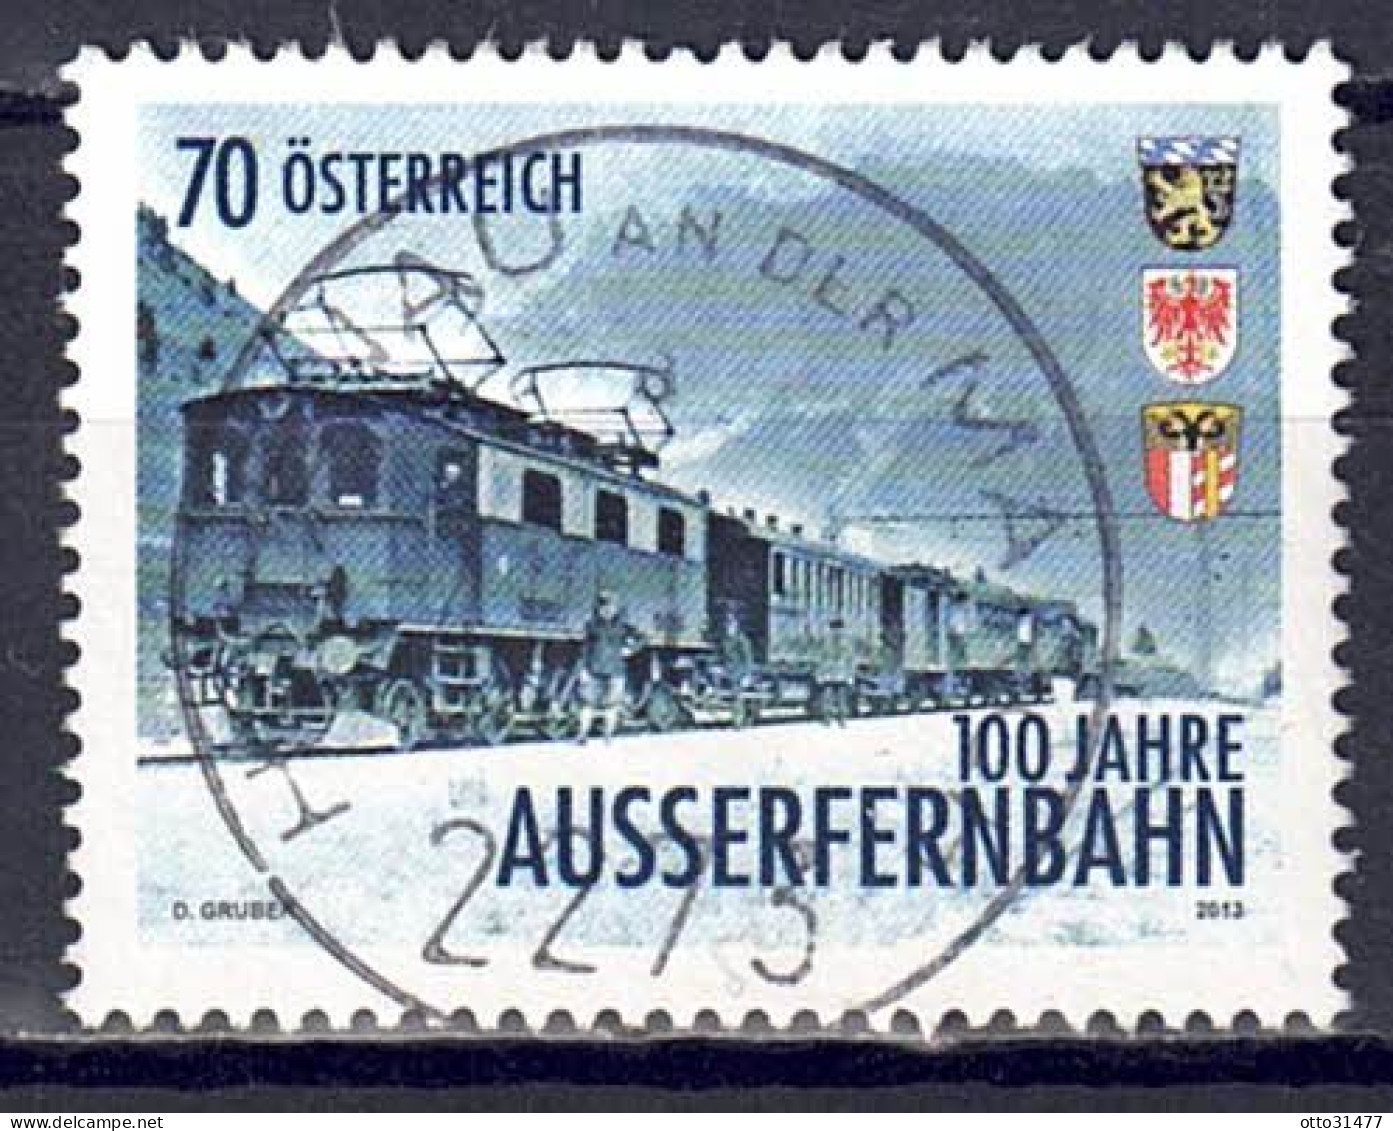 Österreich 2013 - Außerfernbahn, MiNr. 3086, Gestempelt / Used - Used Stamps